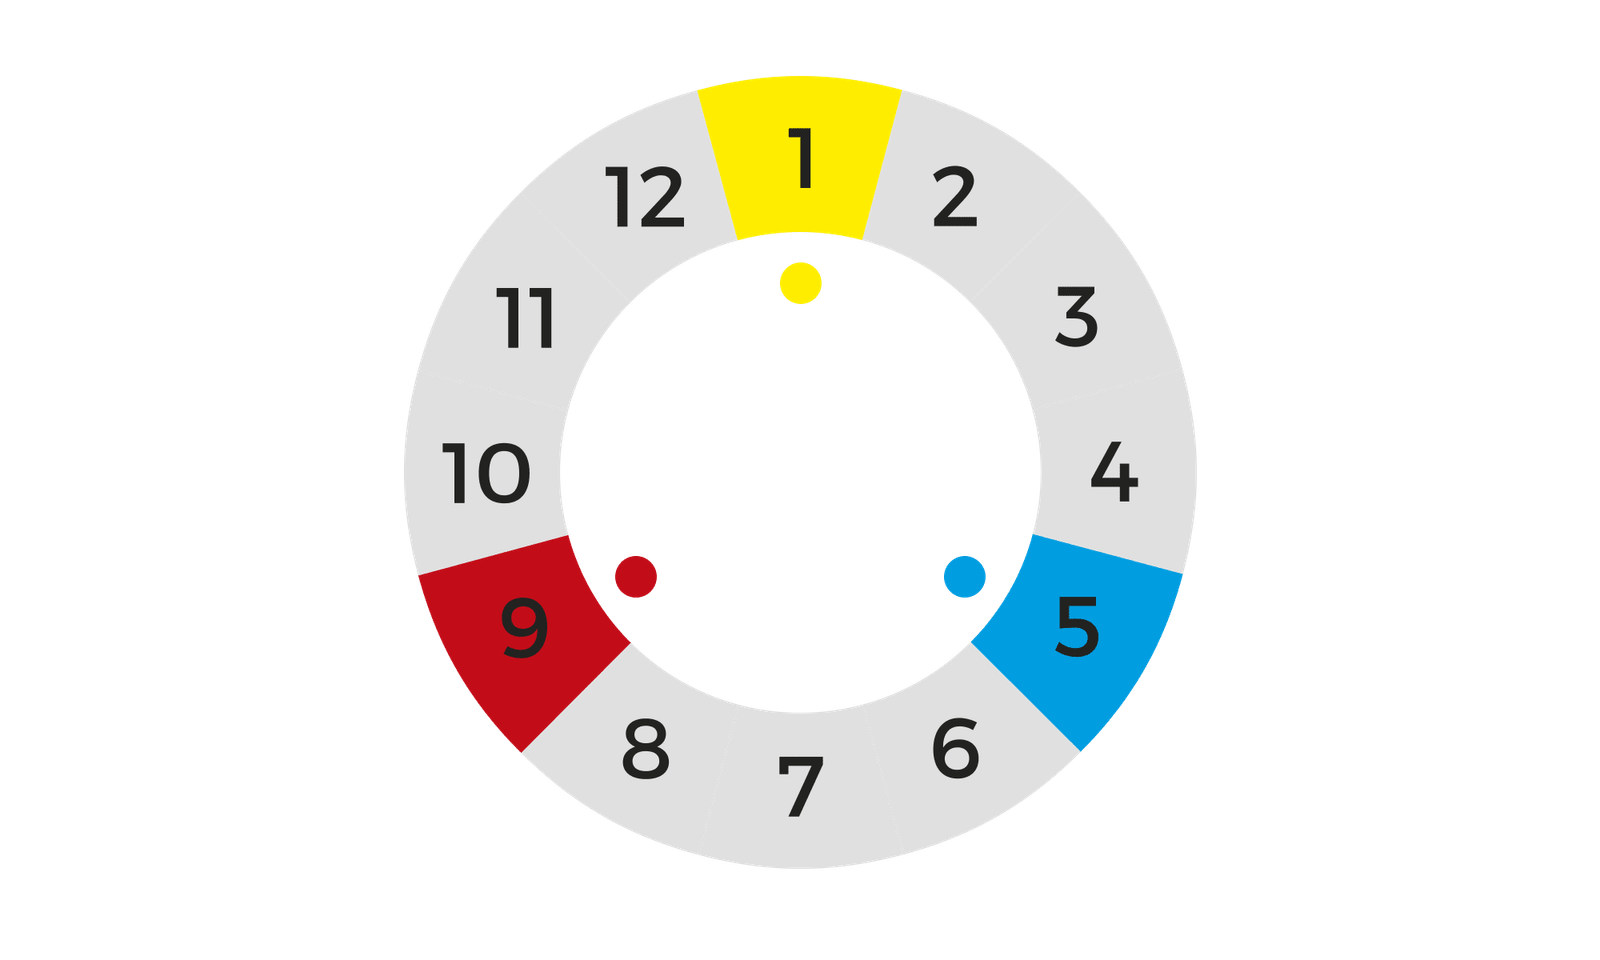 Exemplo de como criar um círculo cromático: posicionamento das cores primárias